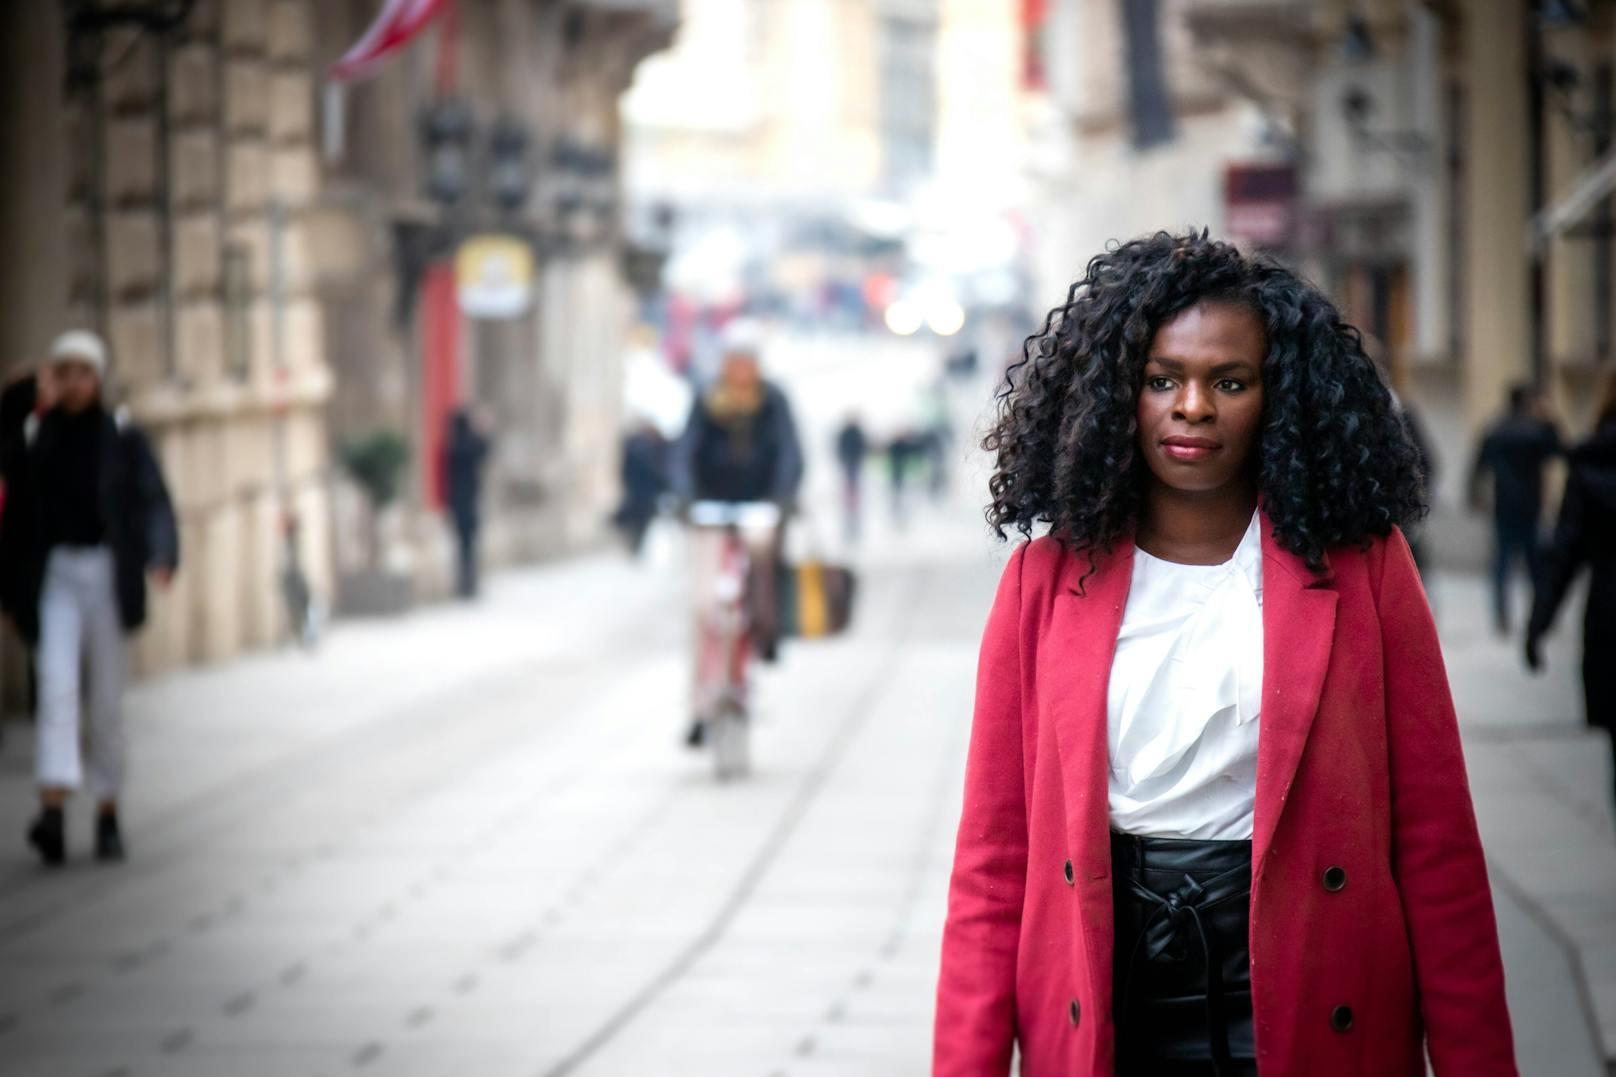 "Mit dem Buch wollen wir junge Menschen ermutigen, in die Politik zu gehen", erzählt Wiener Gemeinderätin Mireille Ngosso im <em>"Heute"</em>-Interview.